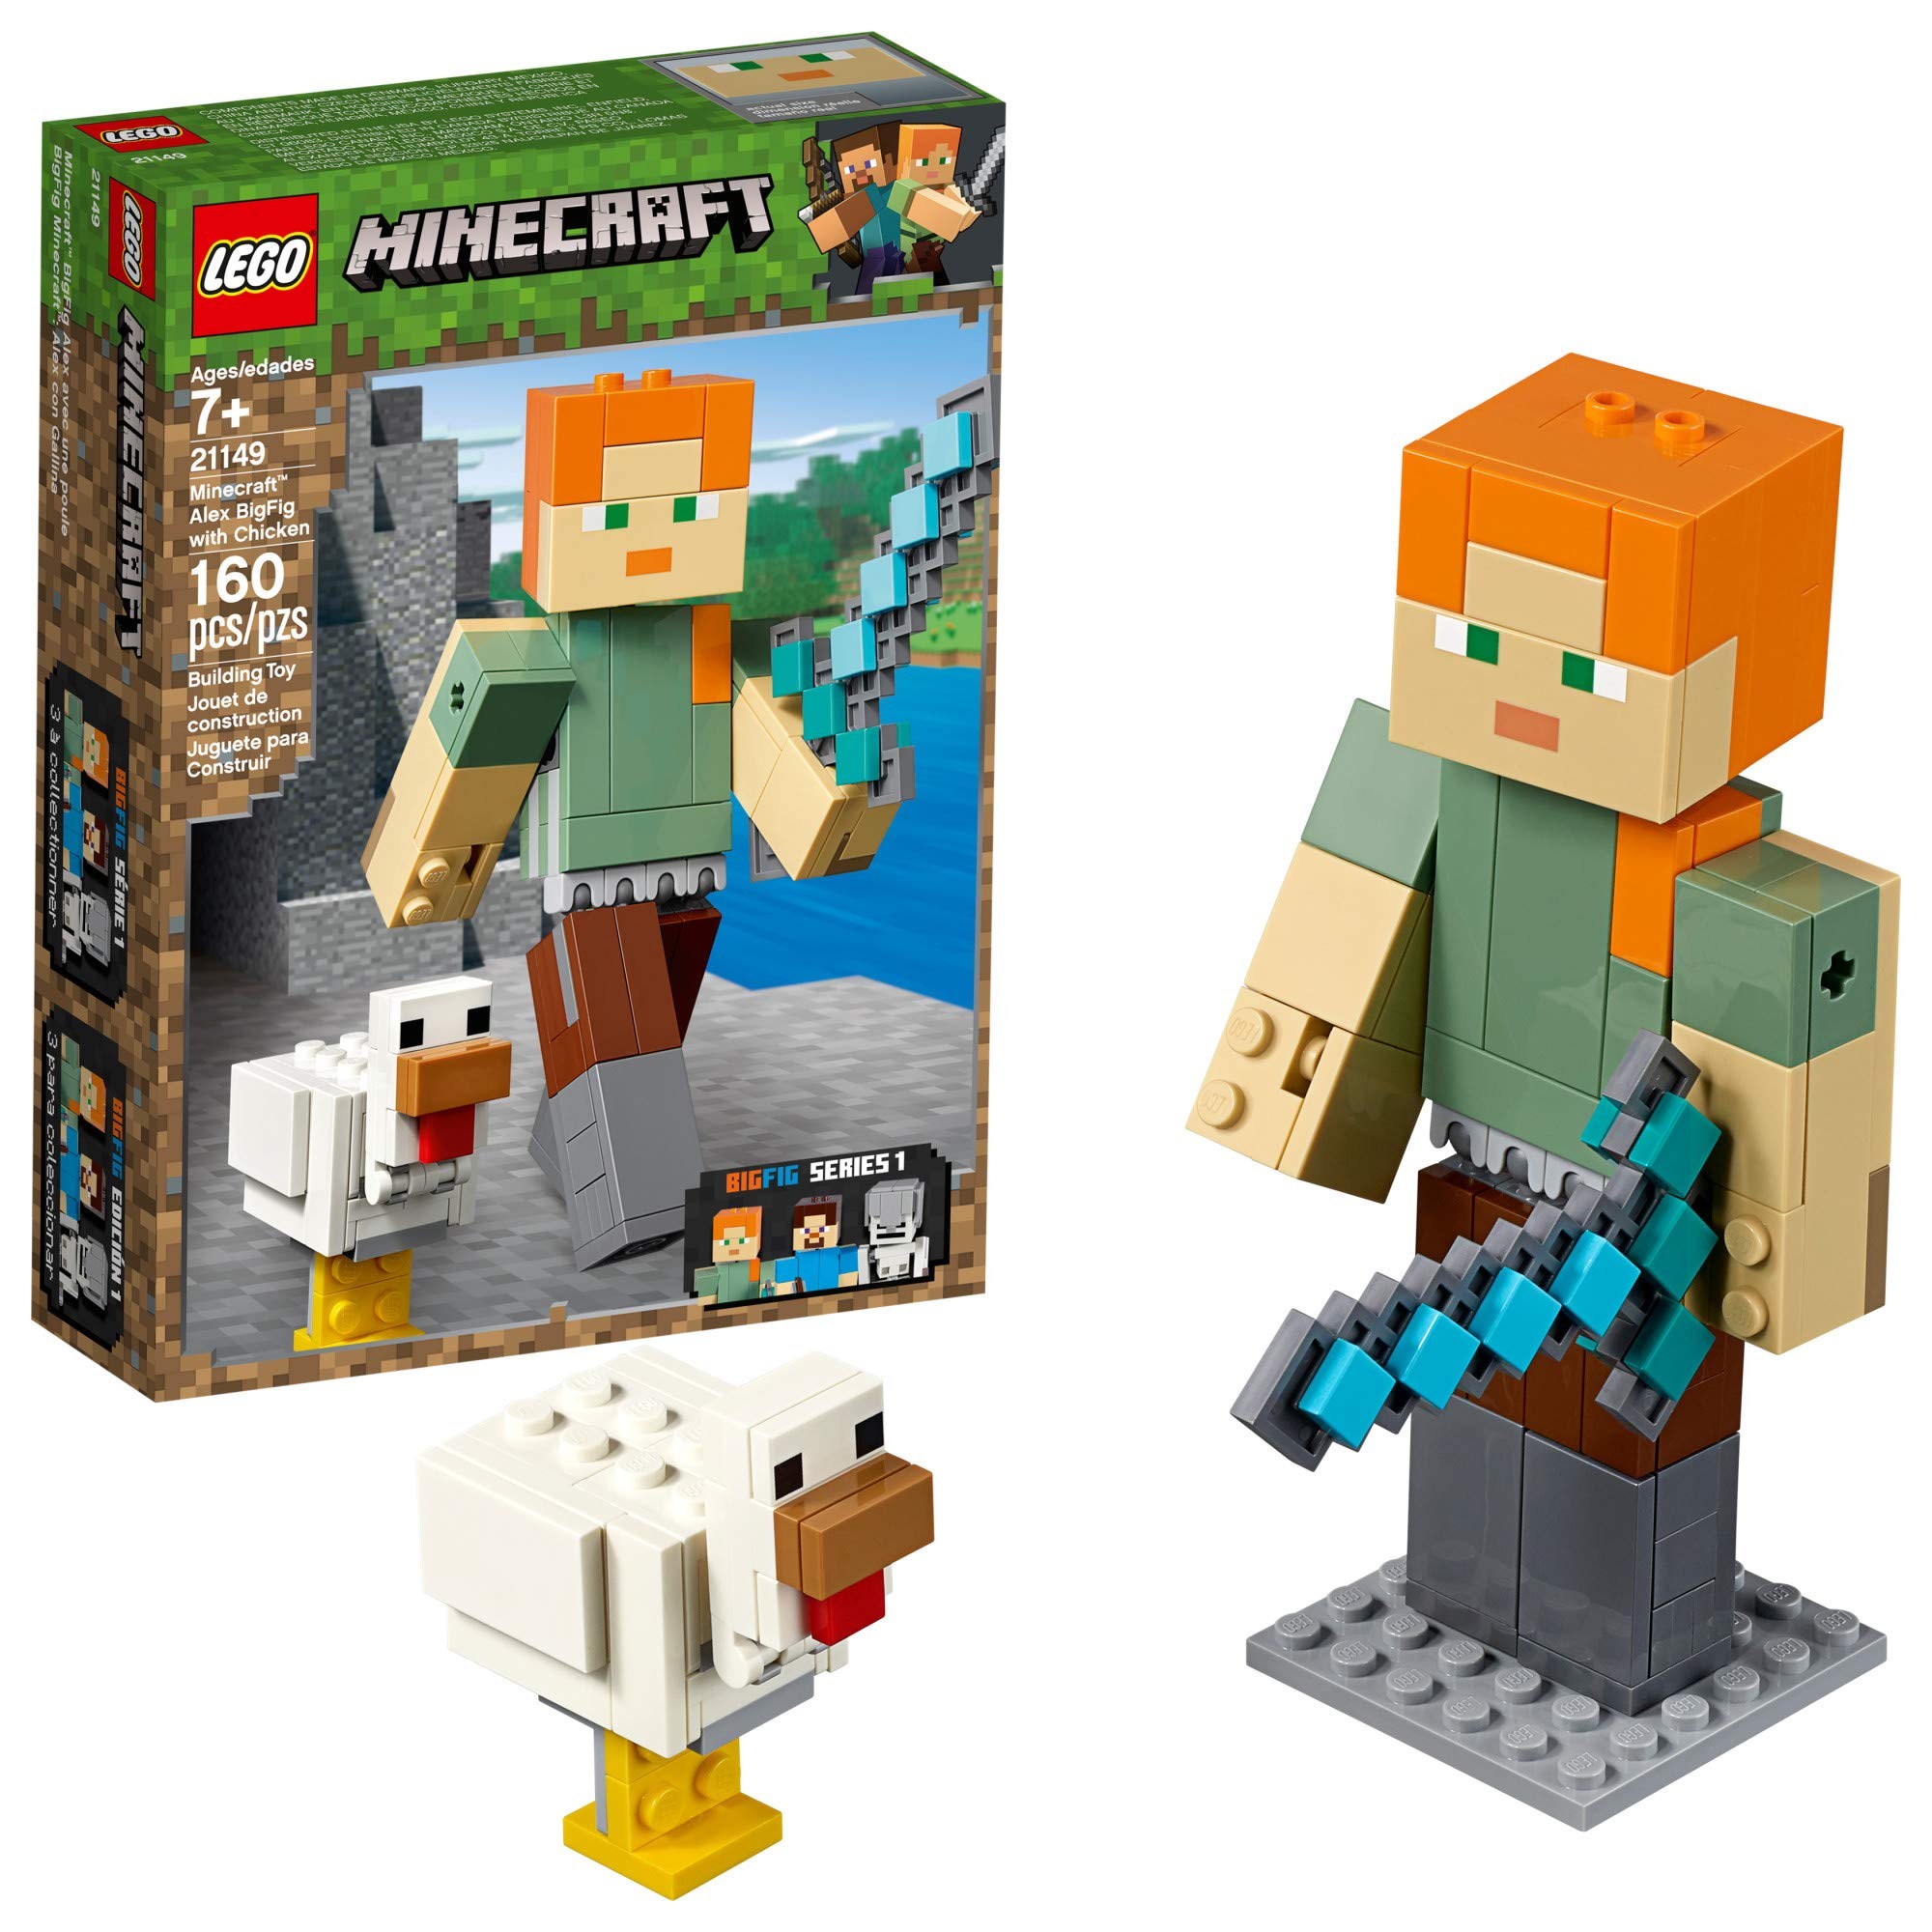 LEGO Minecraft Alex BigFig with Chicken 21149 Building Kit 2019 (160 Piece, 본품선택 